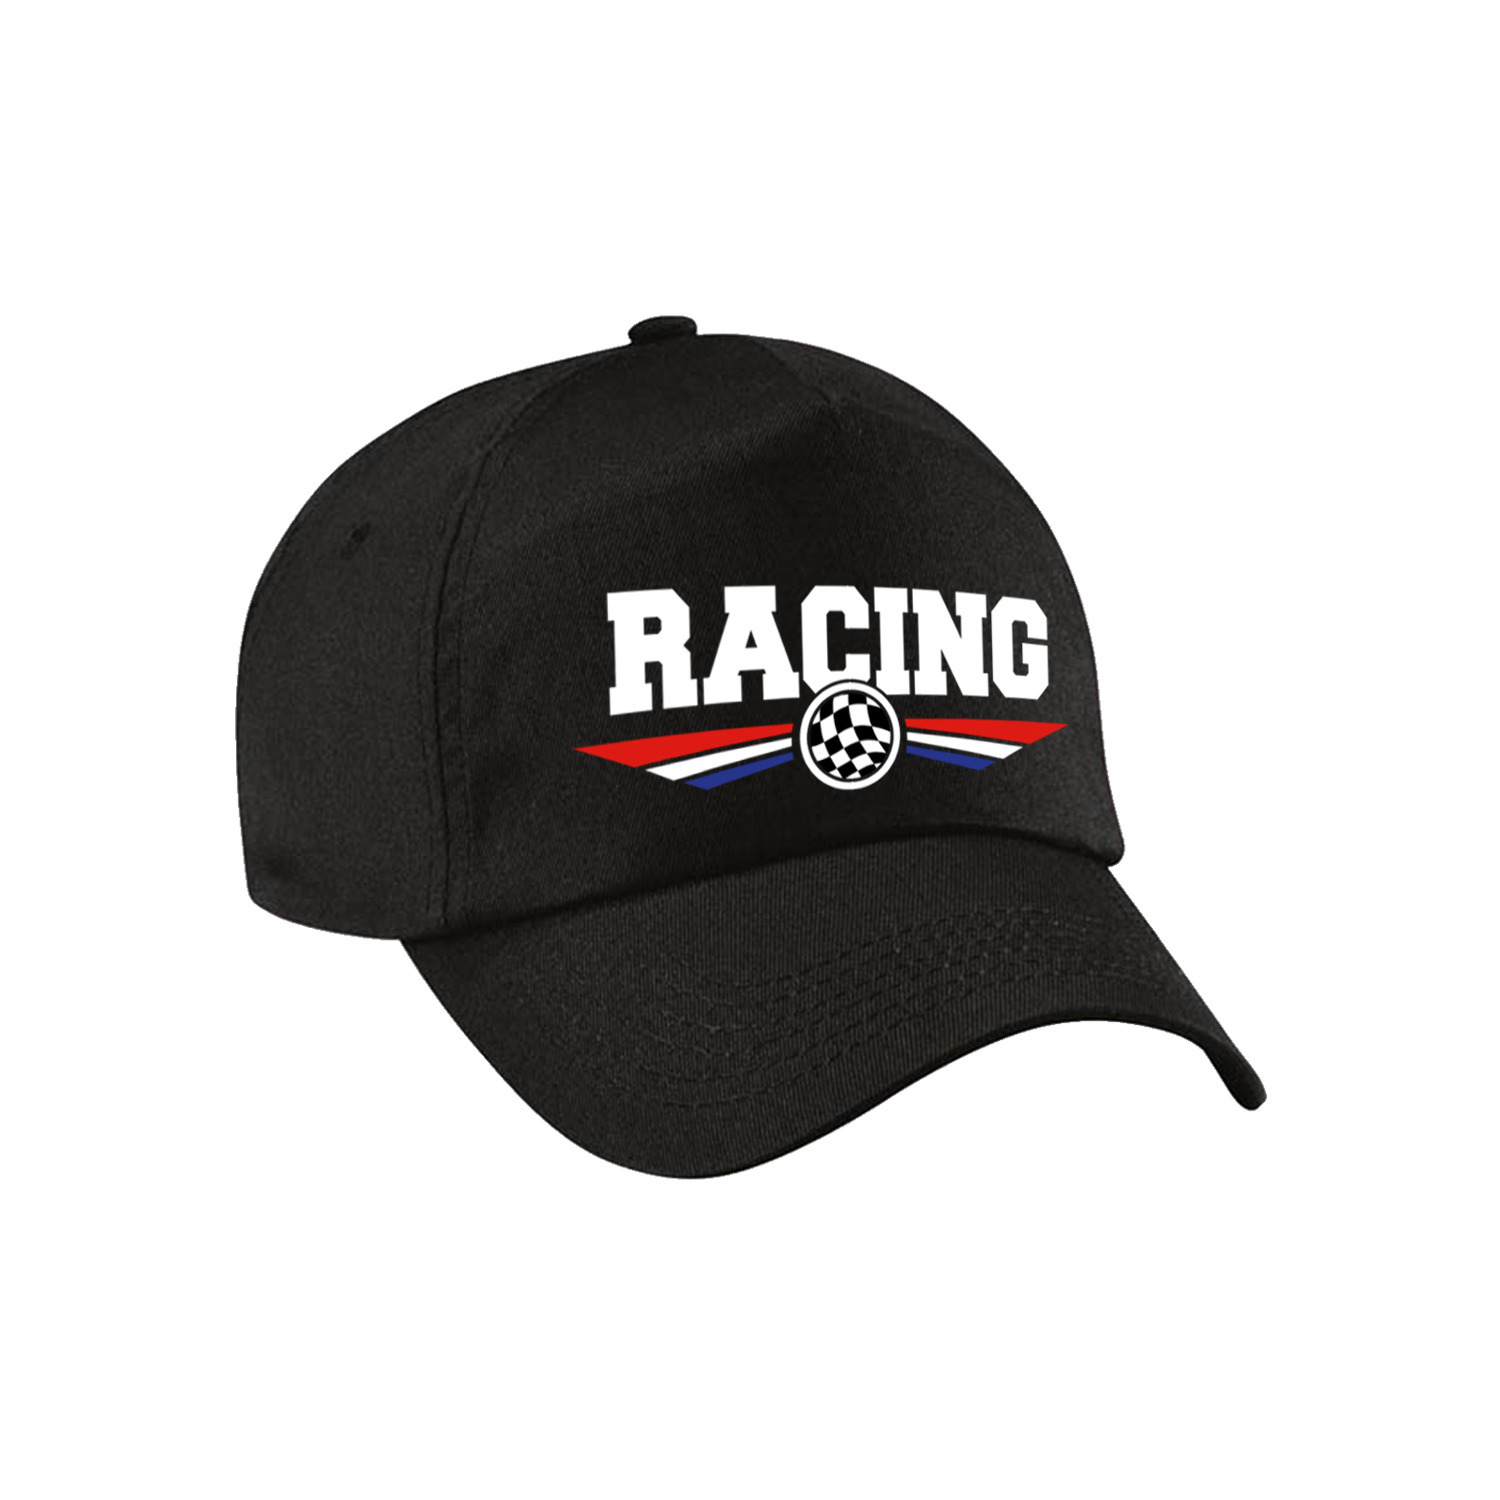 Racing coureur supporter pet-baseball cap met Nederlandse vlag zwart voor kinderen